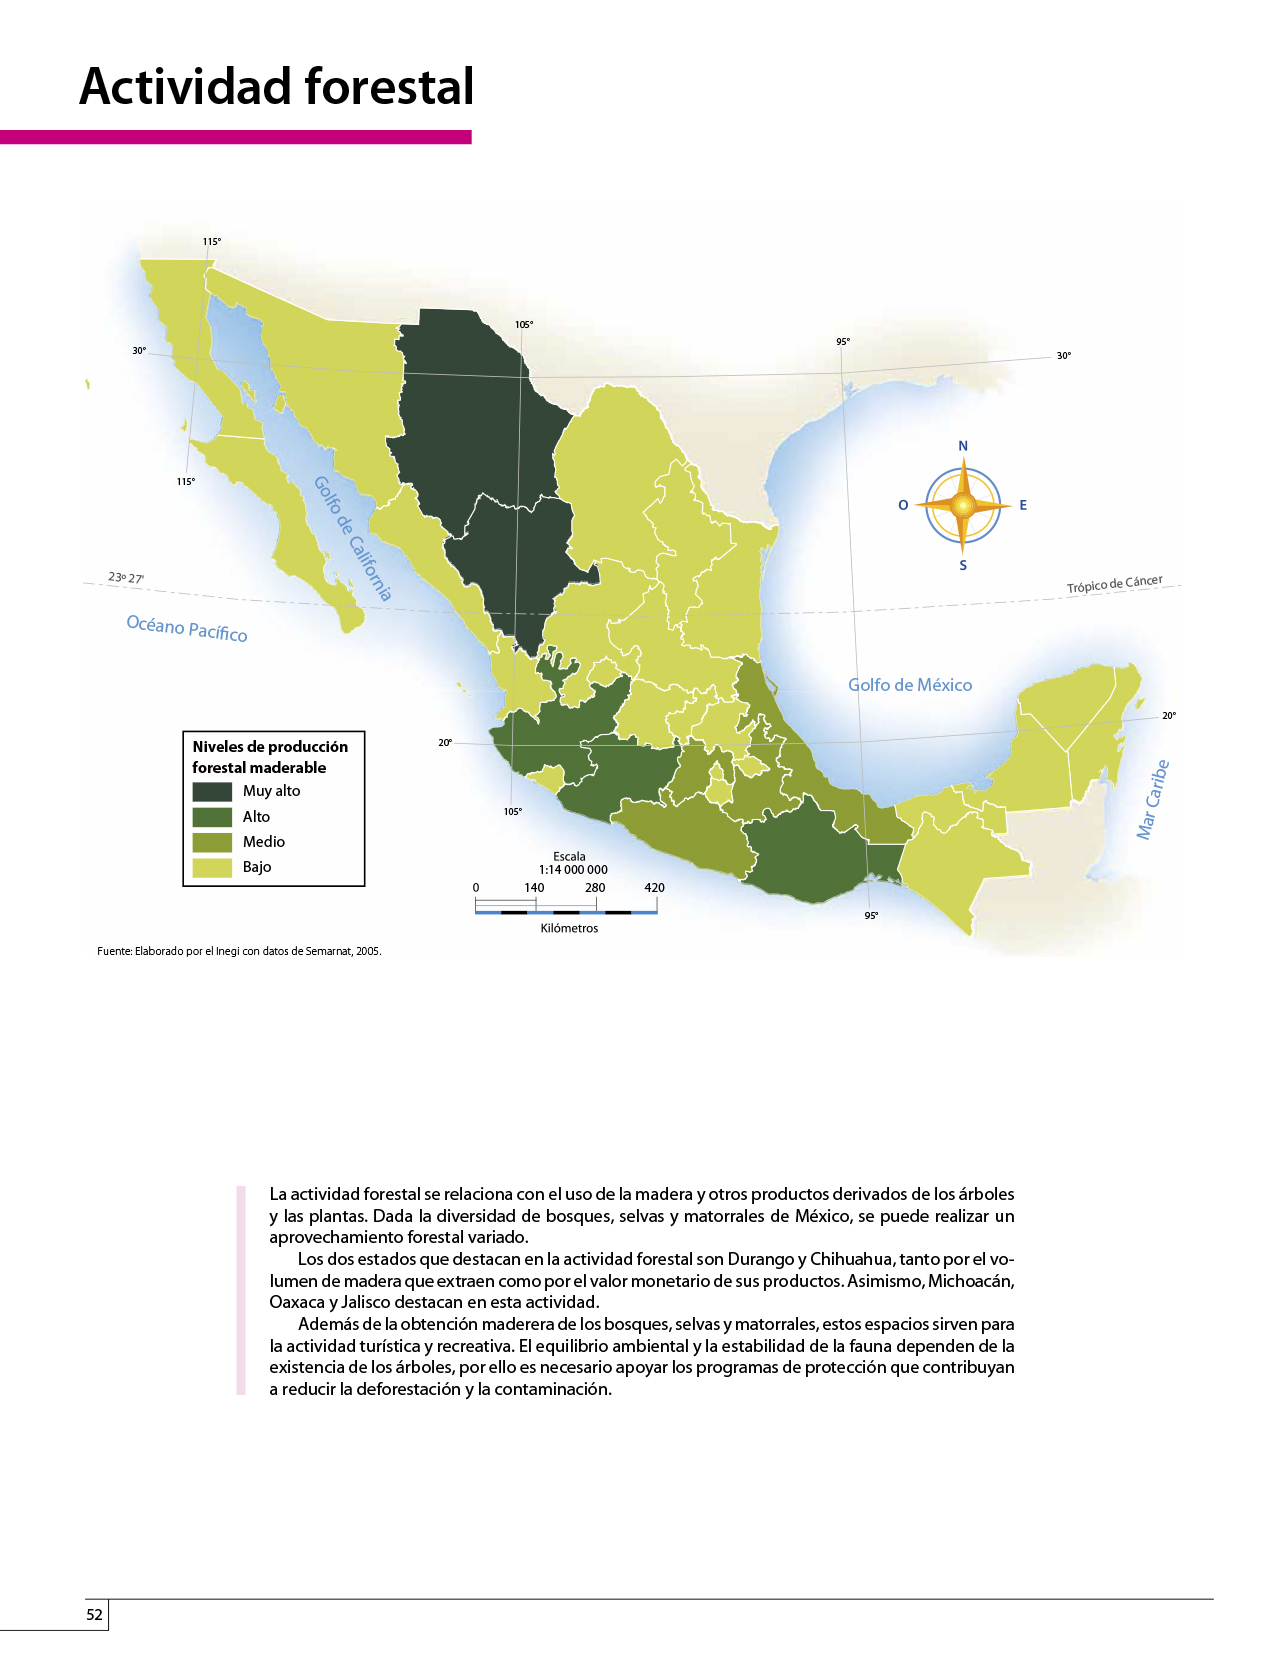 Atlas de México cuarto grado 2017-2018 - Página 52 de 130 ...